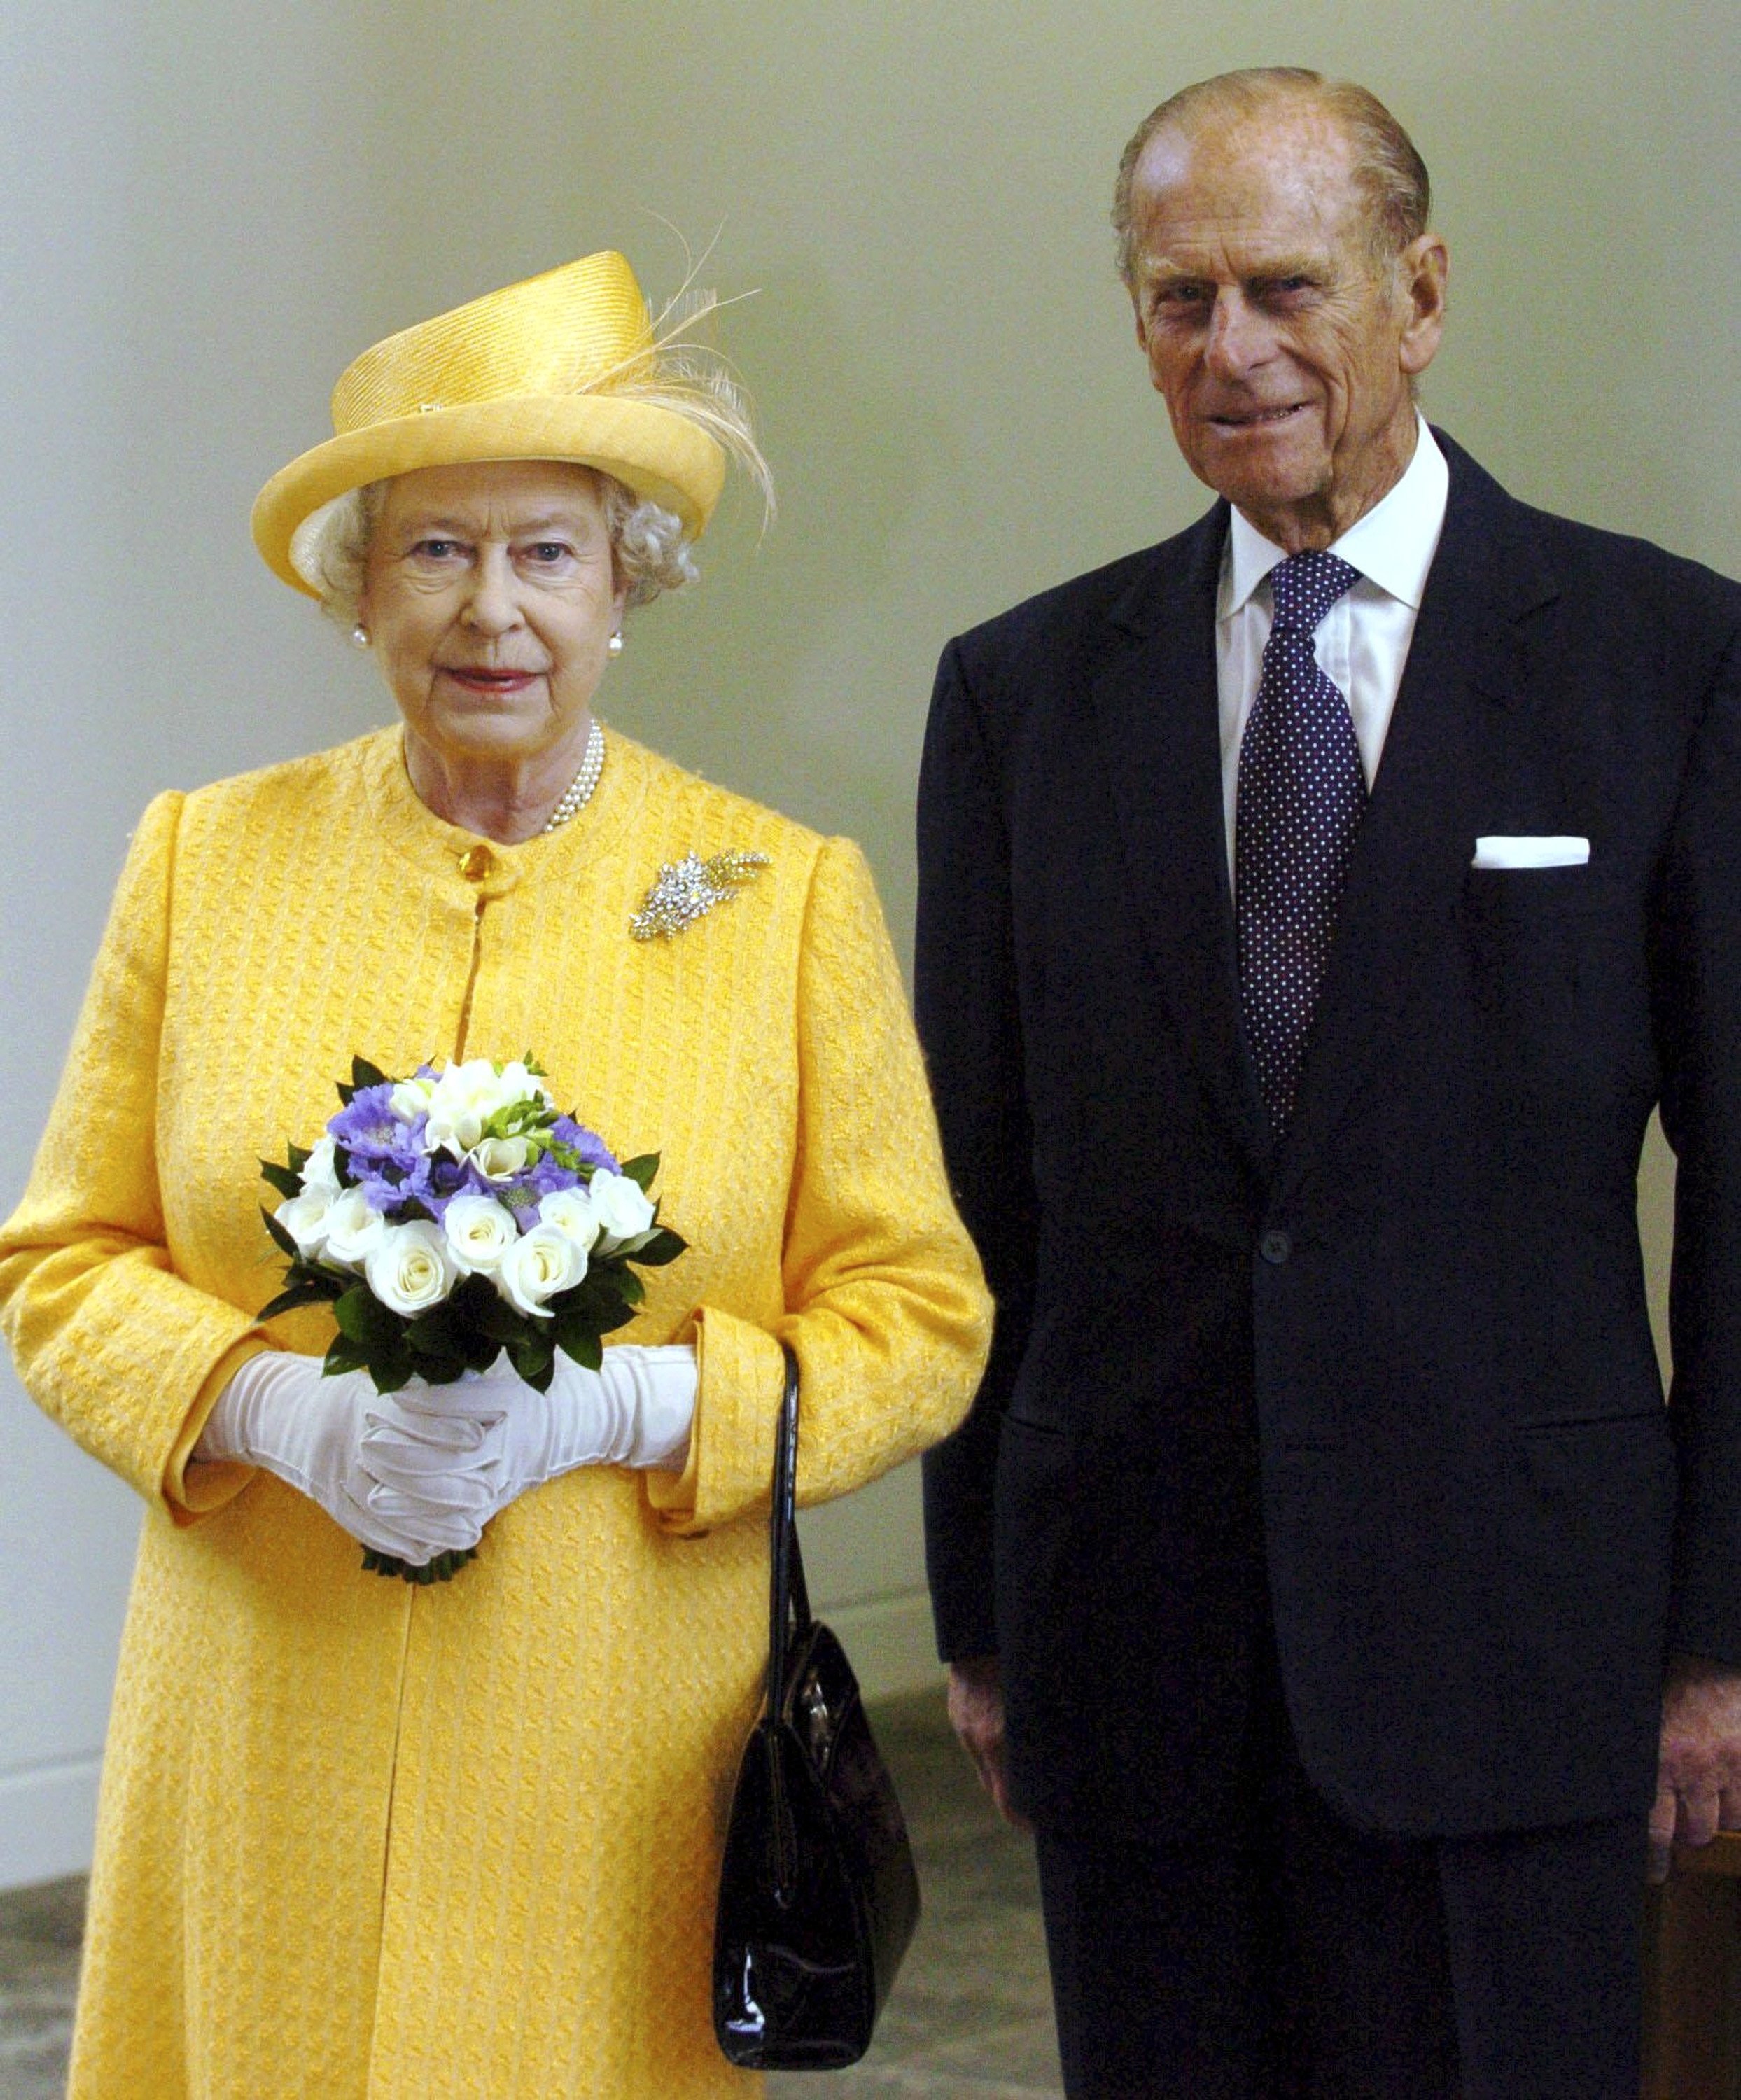 Königin Elizabeth II. und Prinz Philip bei der Eröffnung der Royal Bank of Scotland in Edinburgh am 14. September 2005 | Quelle: Getty Images